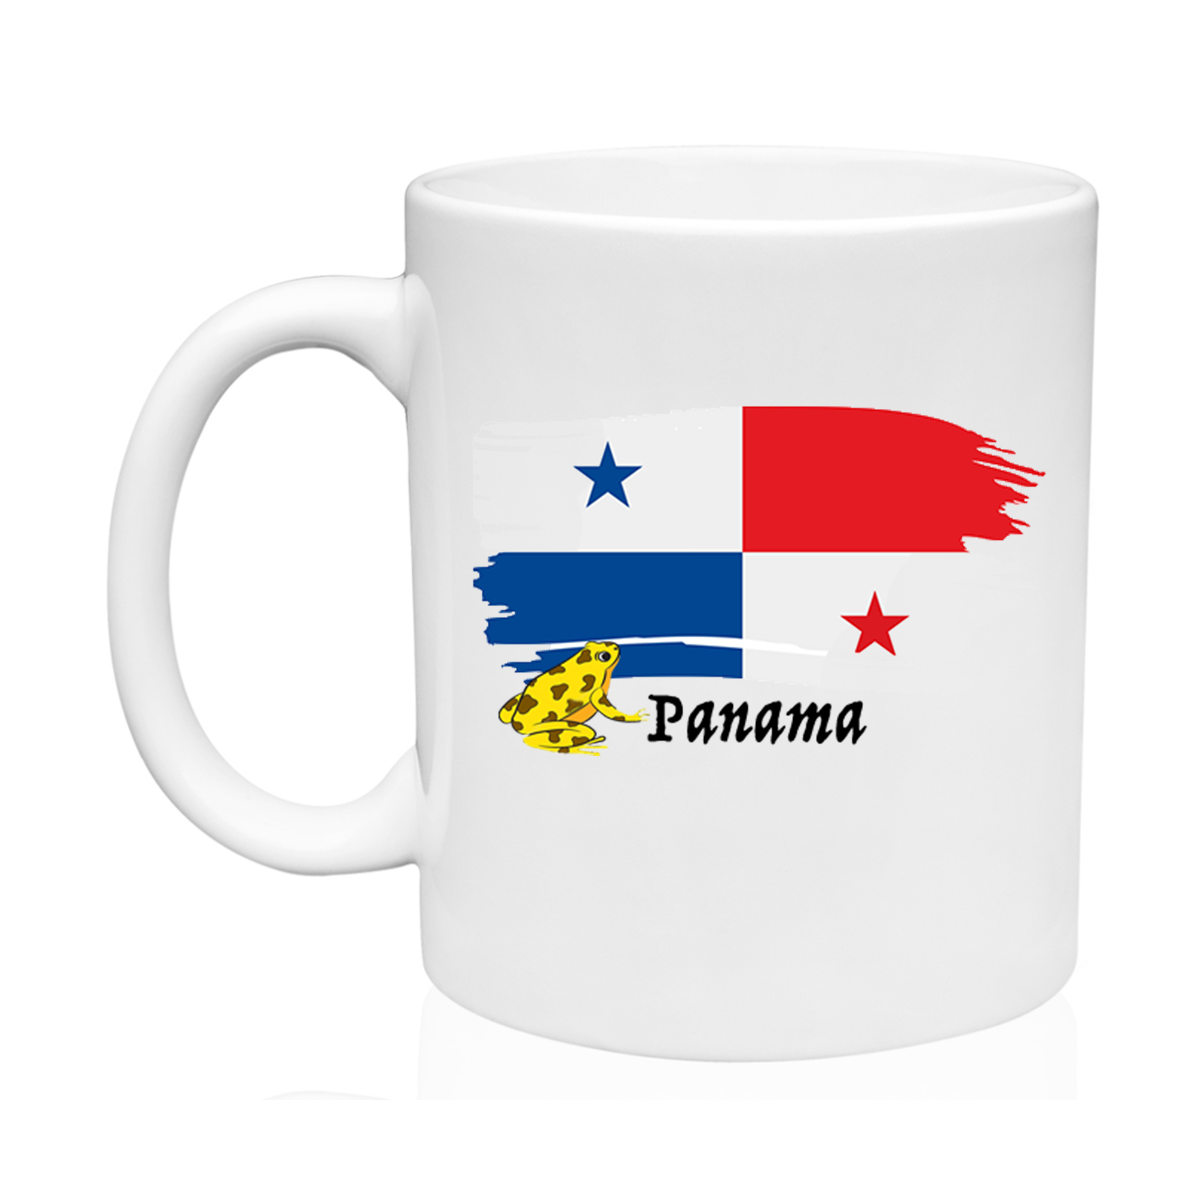 AGAD Turista (I Love Panama Ceramic Mug)